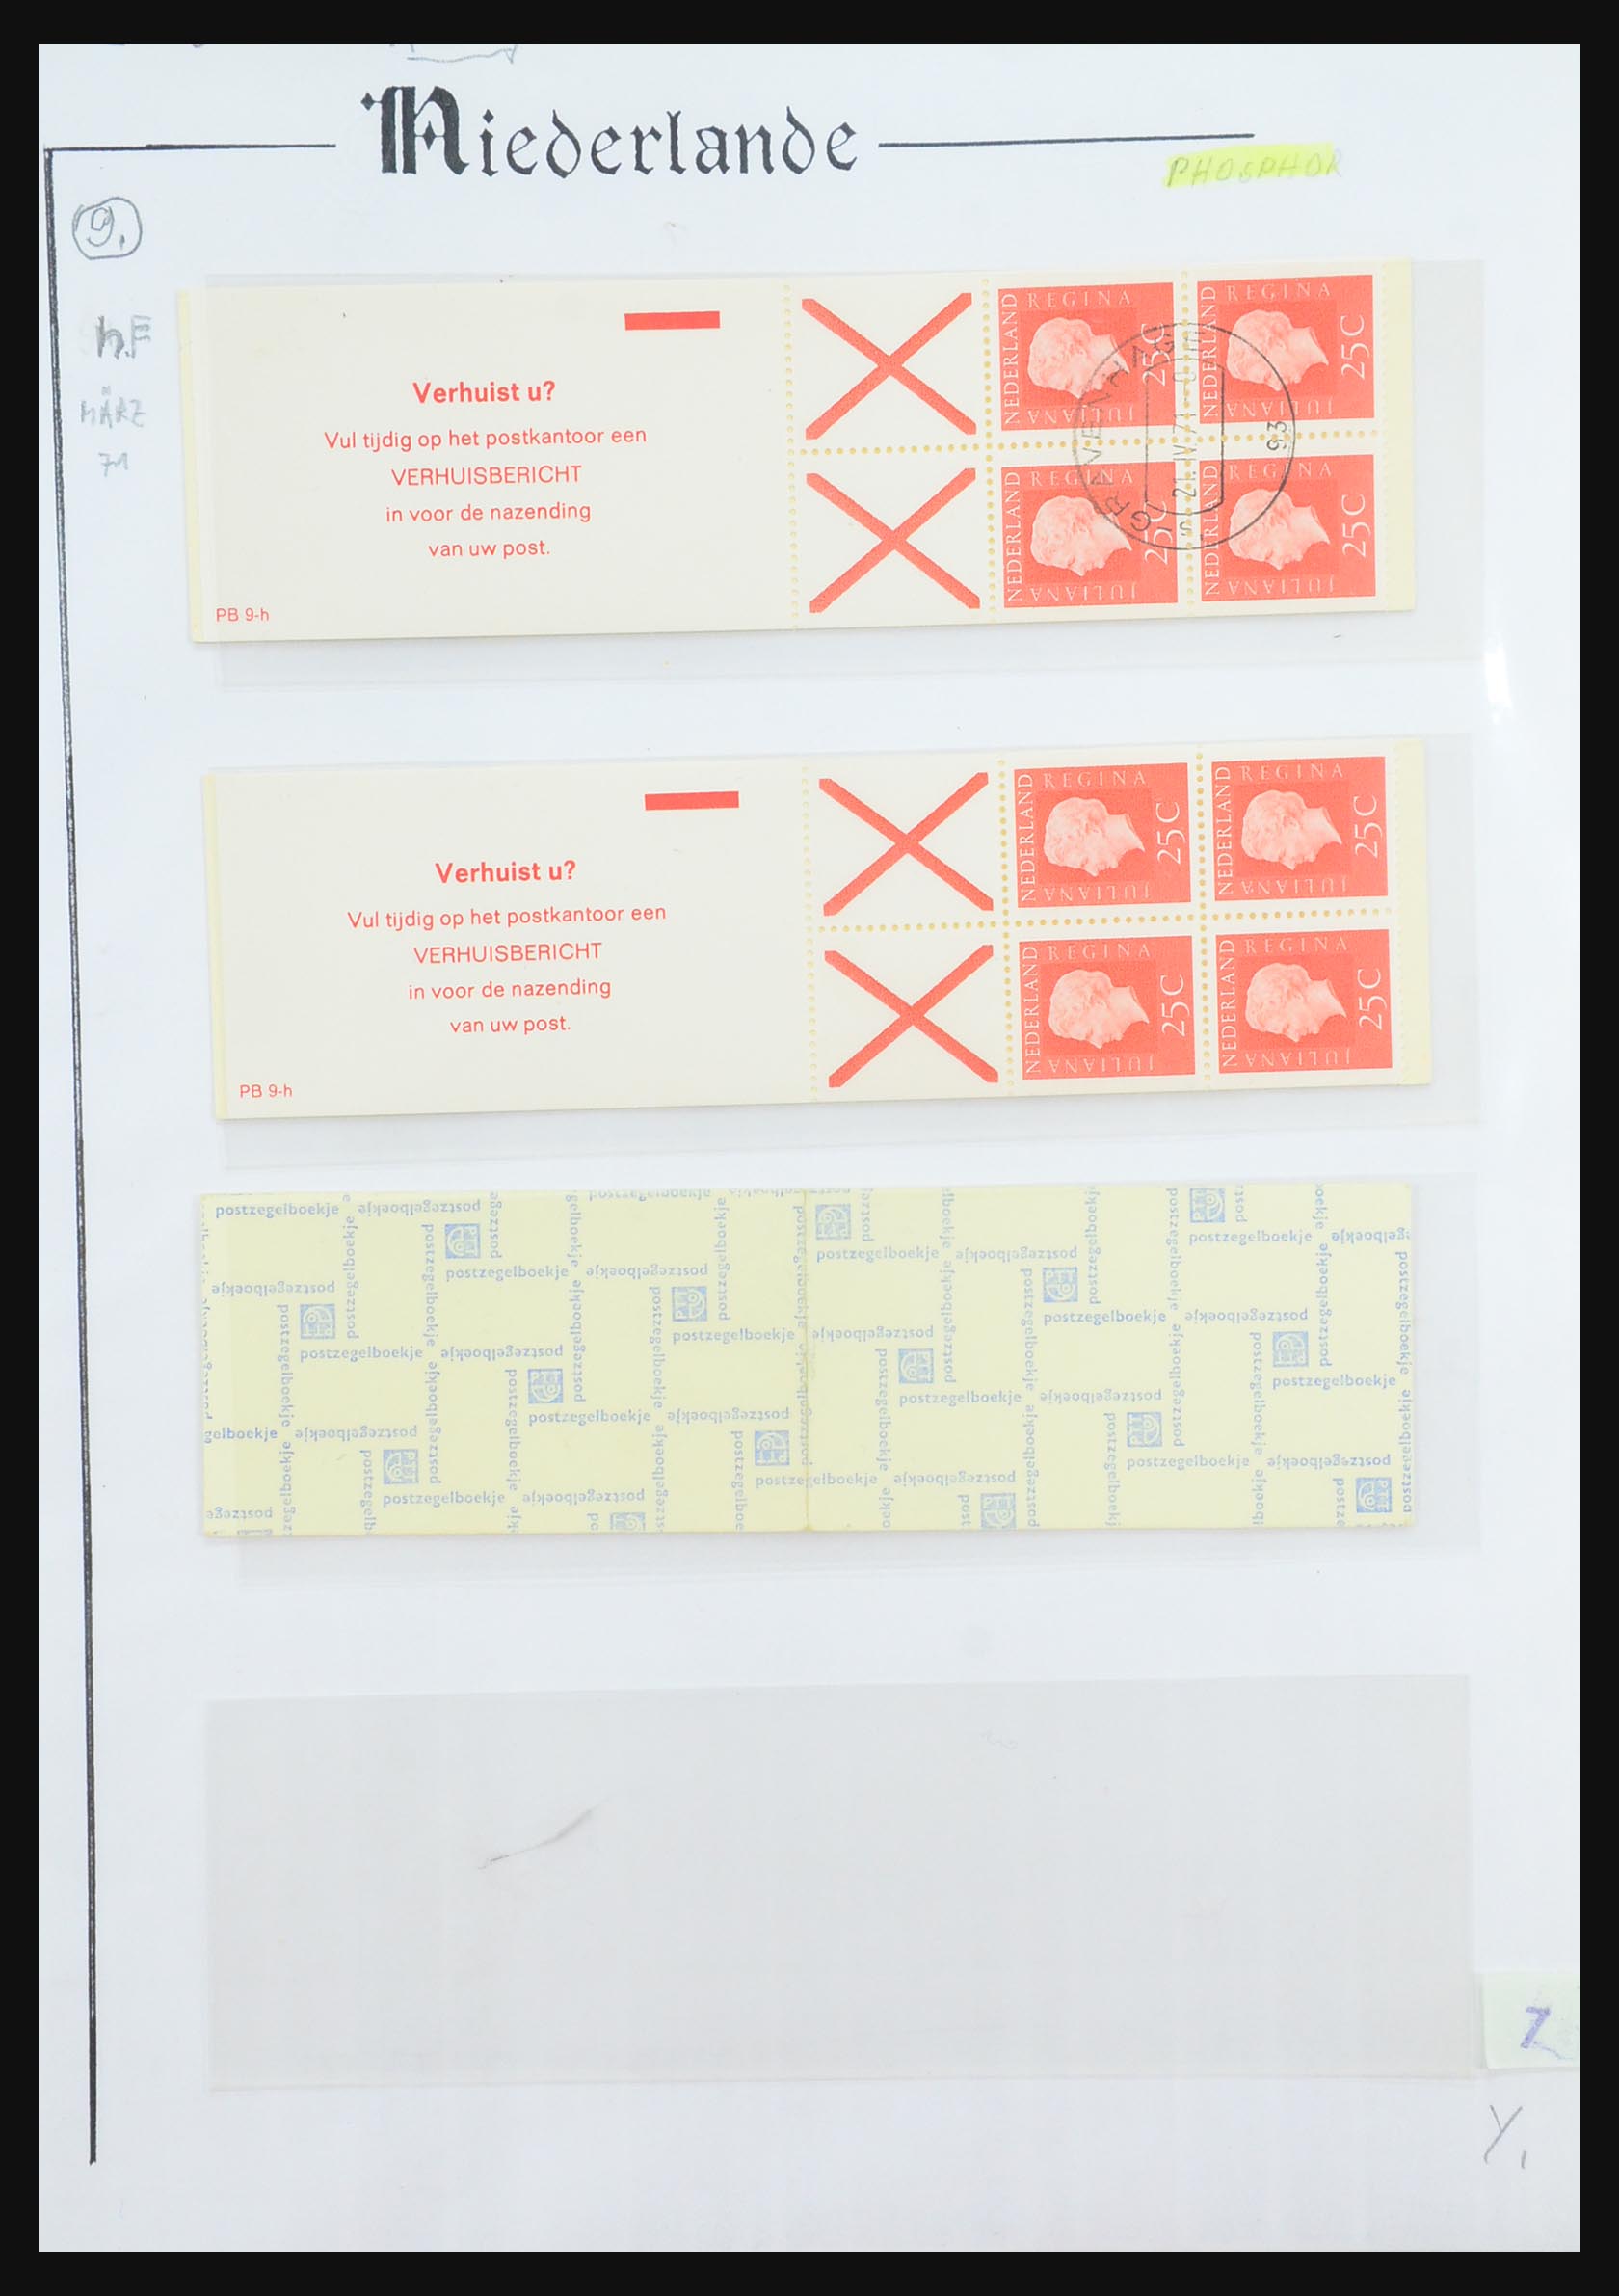 31311 041 - 31311 Netherlands stamp booklets 1964-1994.